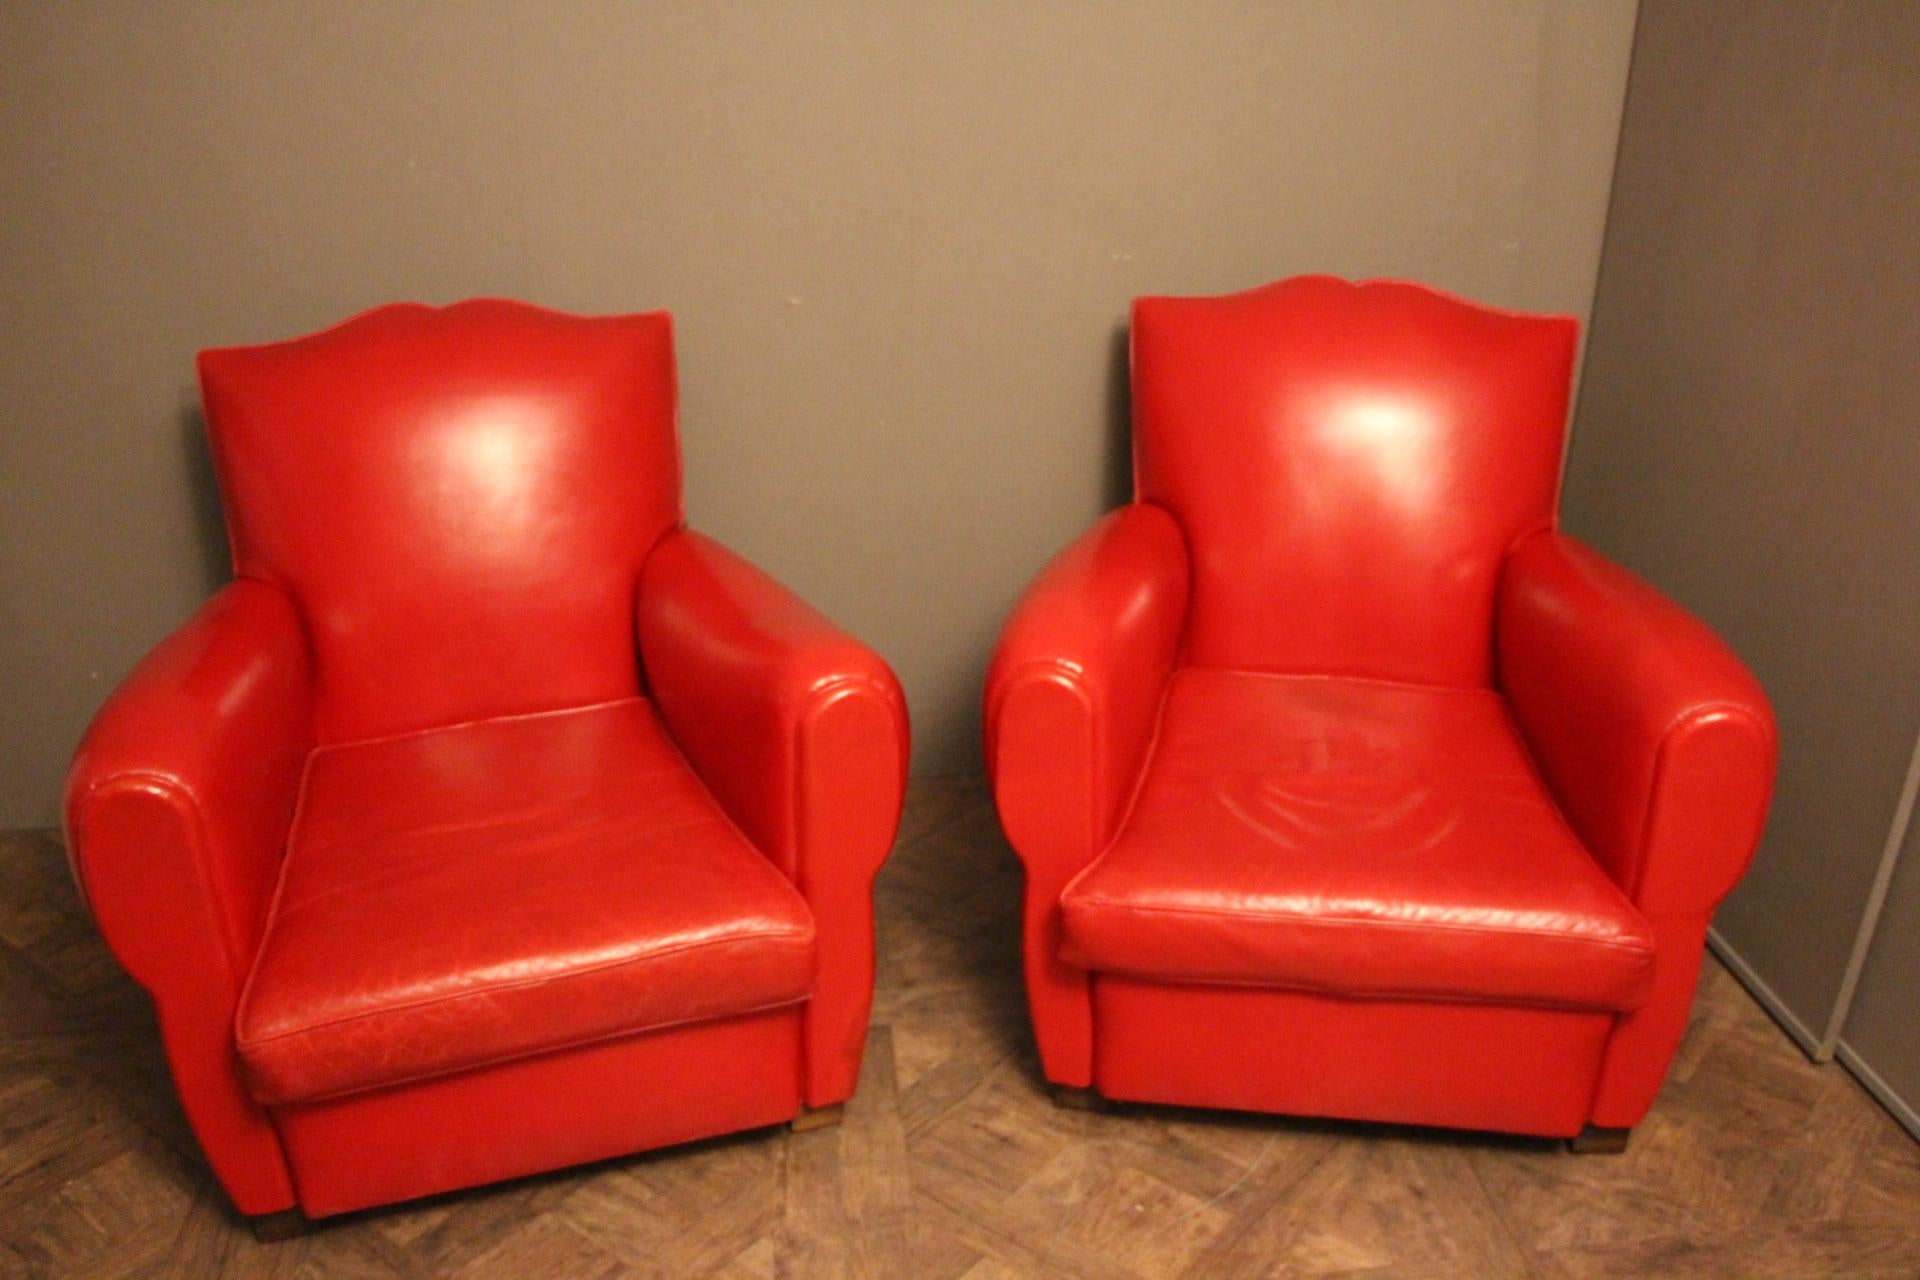 Cette paire de fauteuils club français présente une couleur rouge coquelicot vibrante et un très beau dossier en forme de moustache.
Coussins de siège séparés. Des garnitures en cuir rouge autour et des clous tout autour de leur dos.
Ils sont